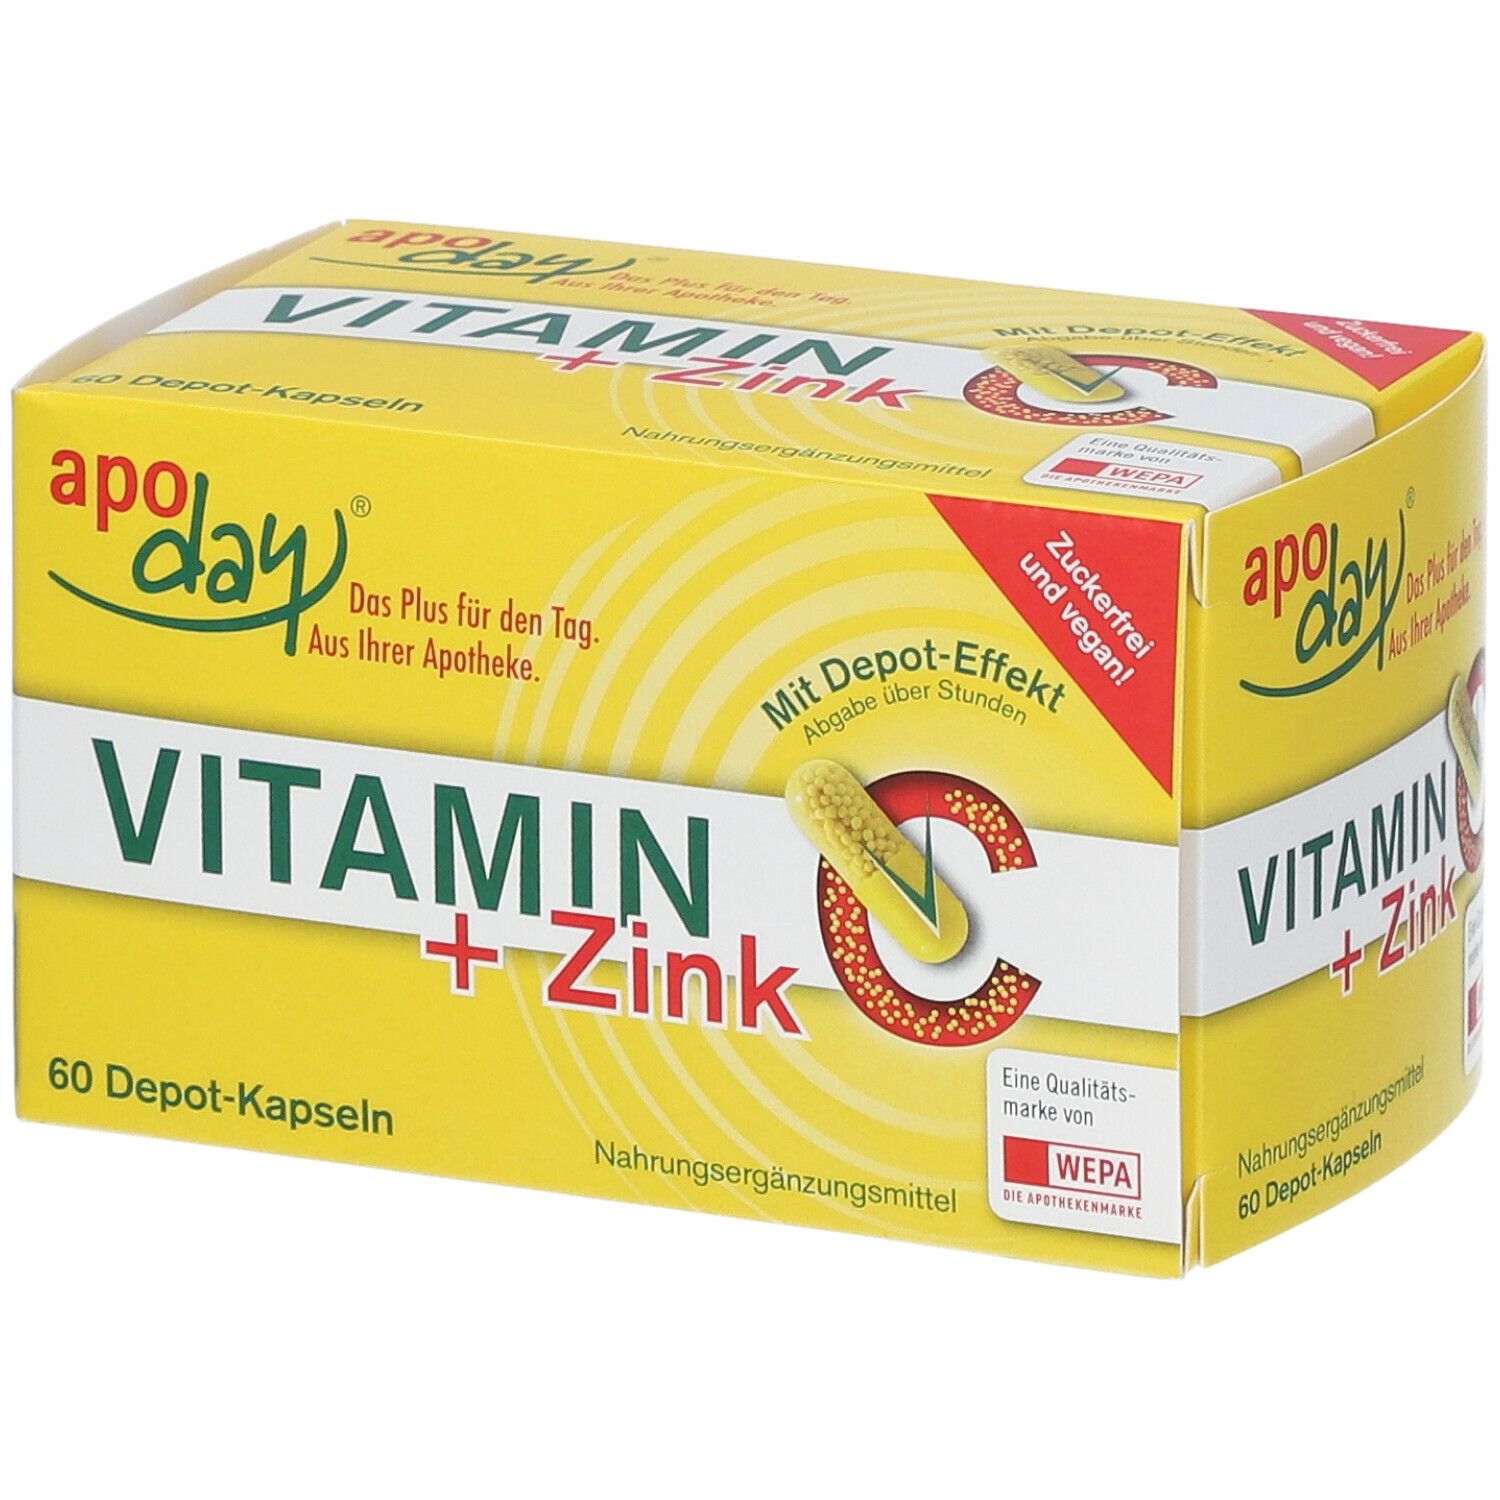 apoday® Vitamin C + Zink